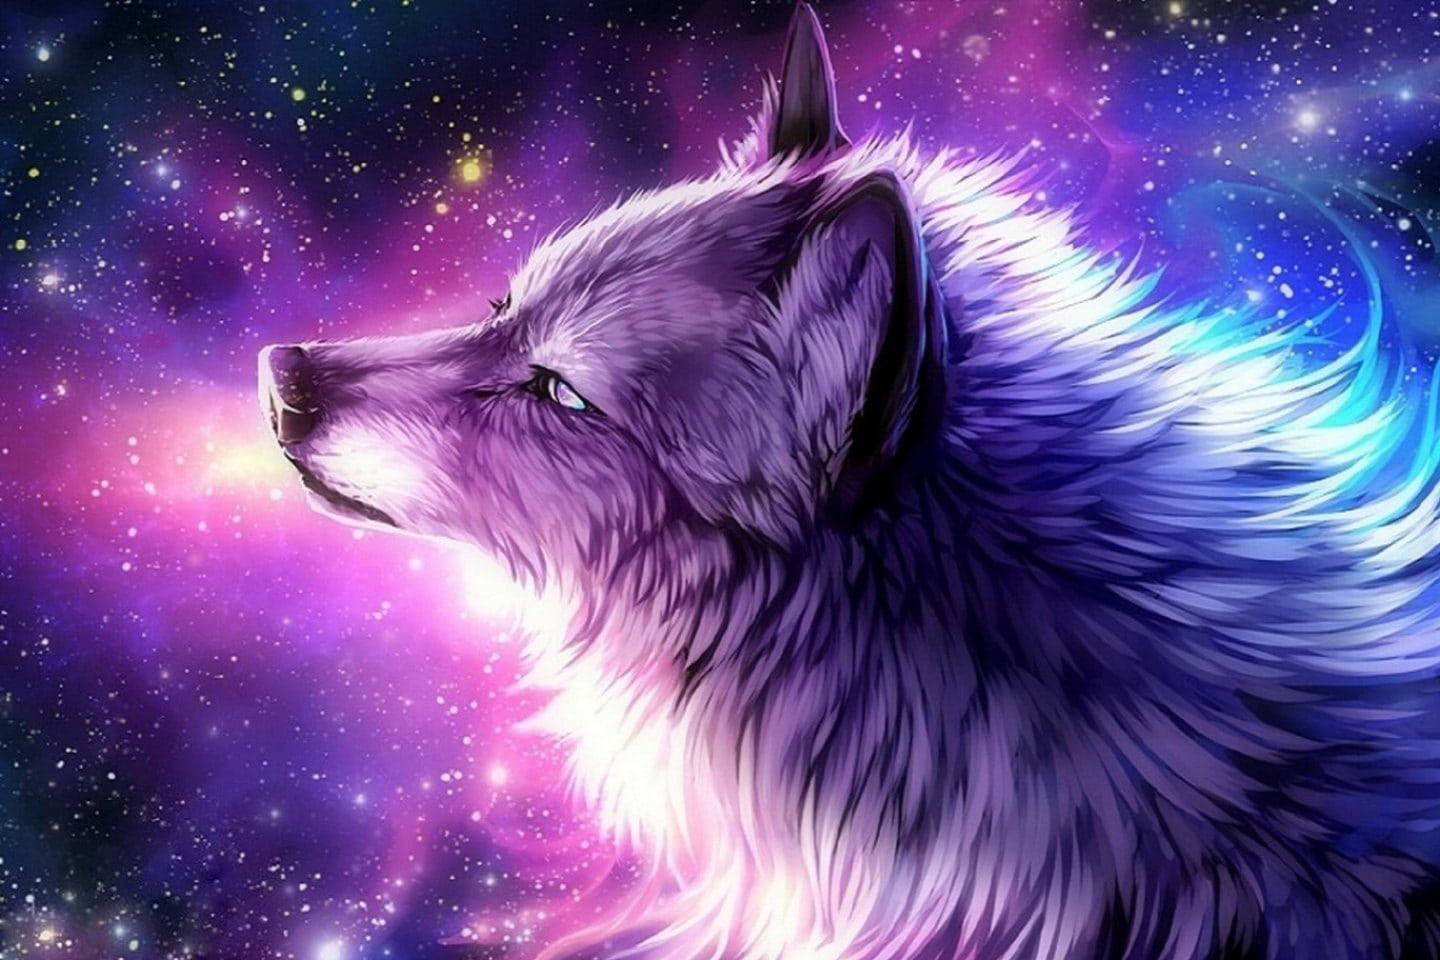  Wölfe Hintergrundbild 1440x960. Anime Wolf Wallpaper KOSTENLOS